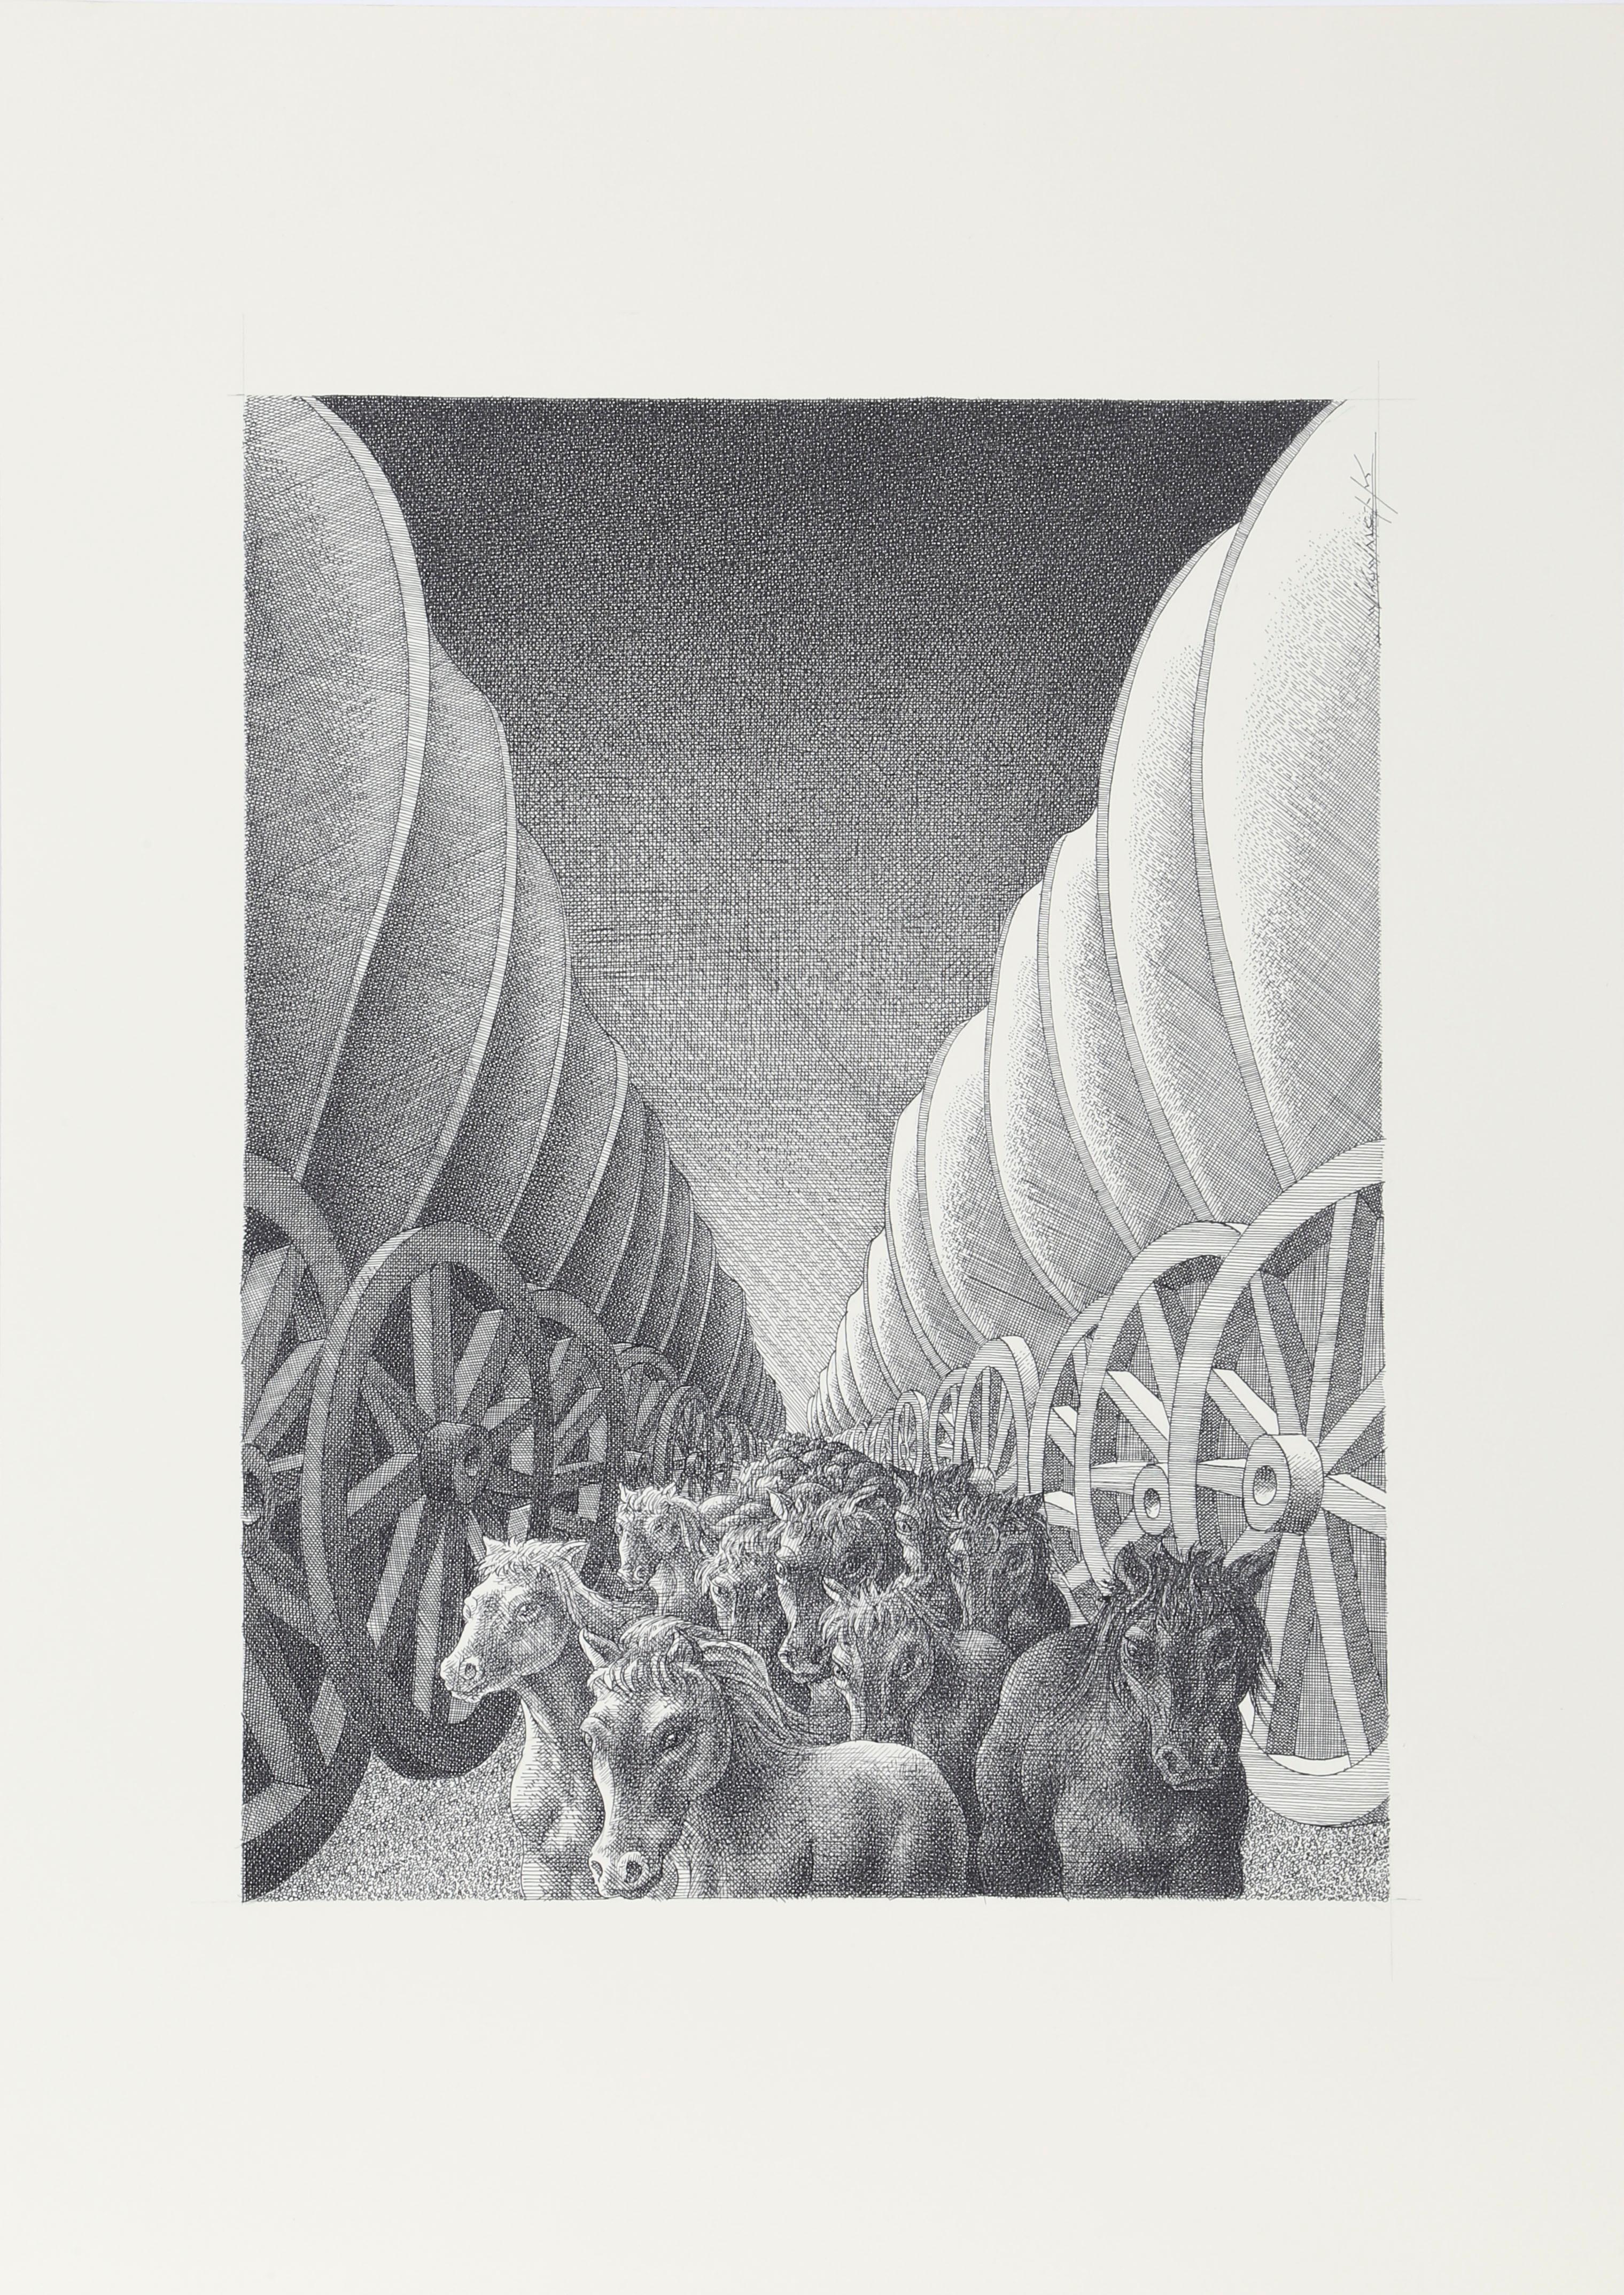 In diesem detaillierten, von Hand gezeichneten und gezeichneten Werk des polnischen Künstlers Wojtek Kowalczyk mit Tinte auf Papier läuft eine Horde von Pferden durch die Mitte der Komposition. Allerdings sind die Pferde deutlich kleiner als die